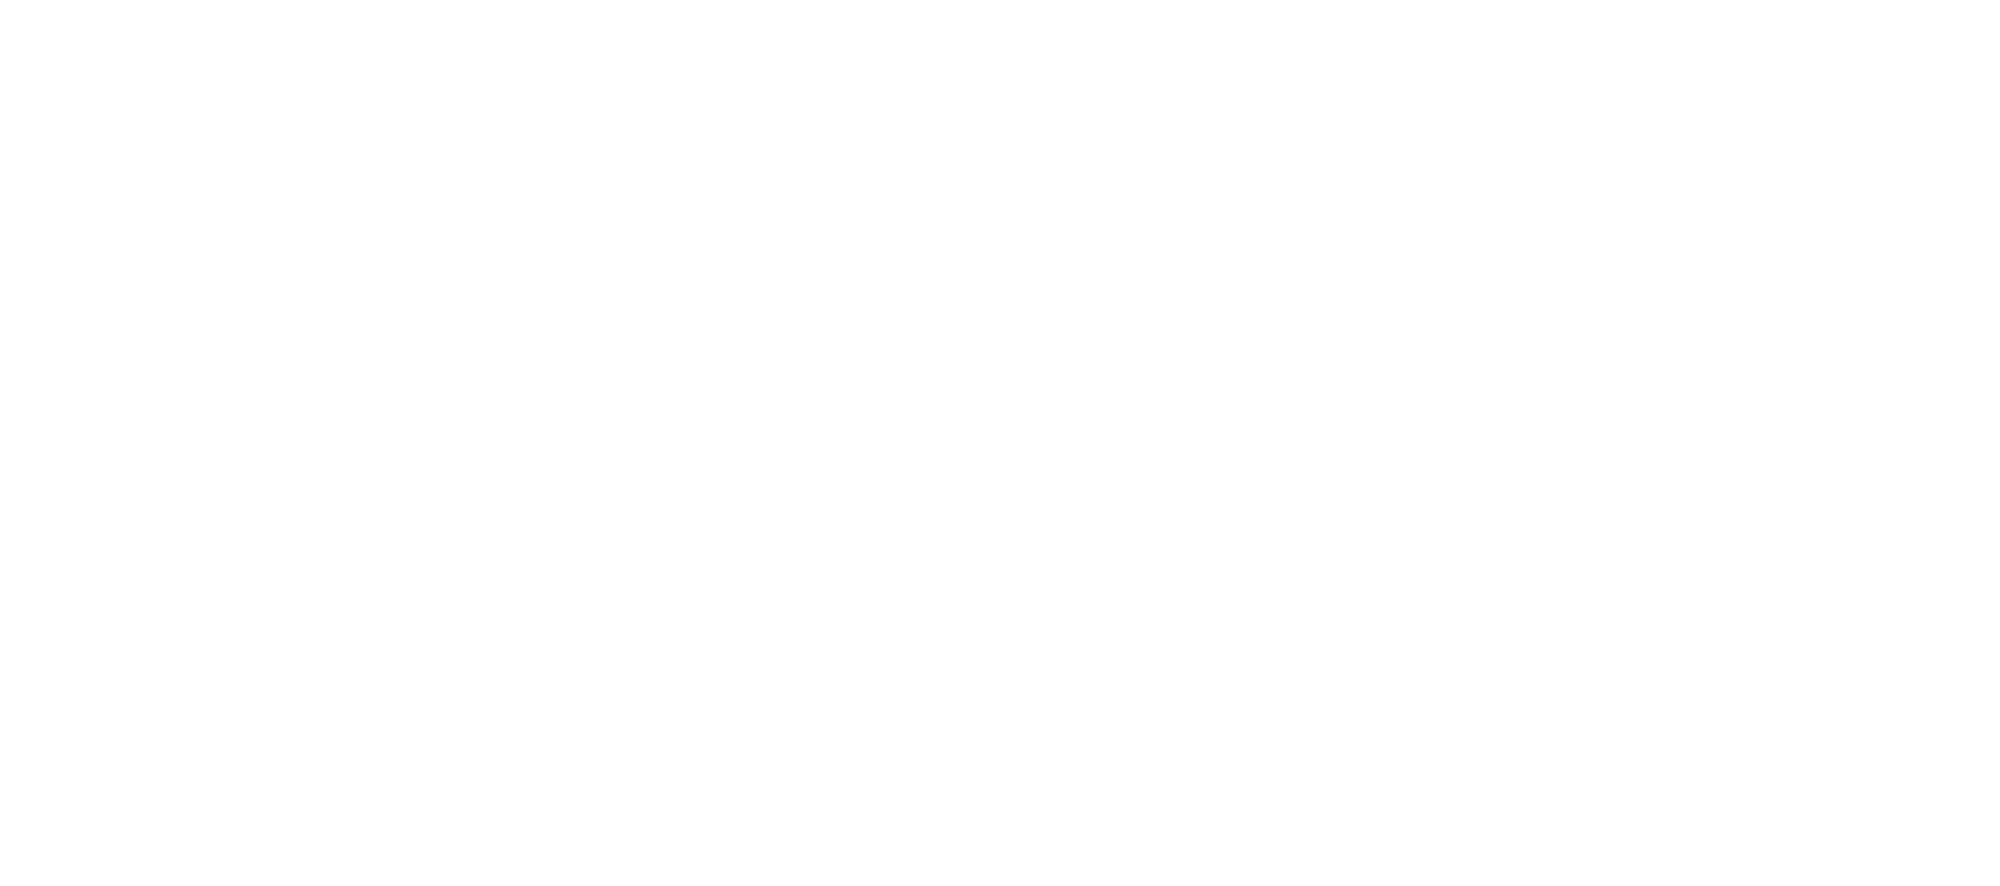 logo-footshop.png